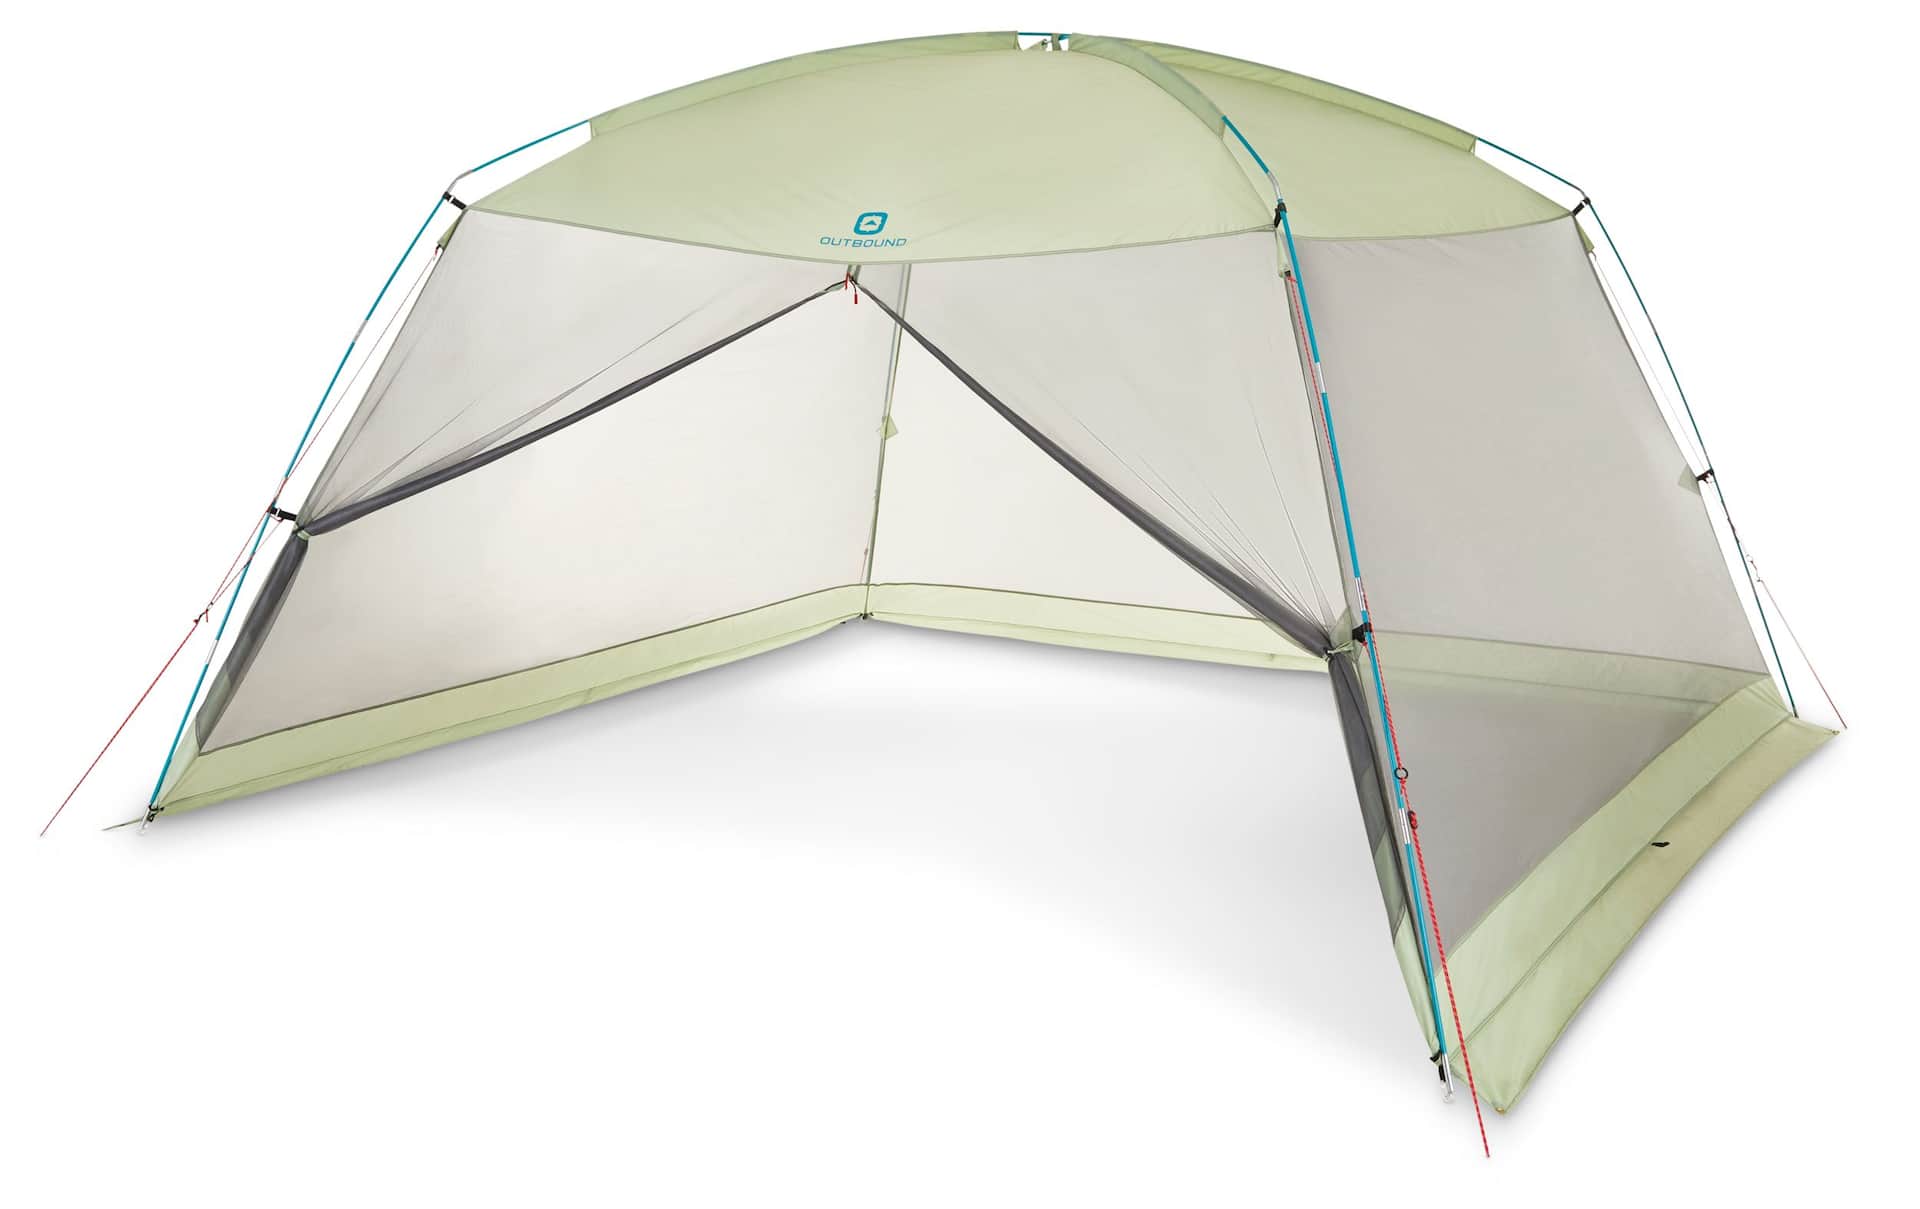 Moustiquaire Triangle Anti-moustiquaire pour lit de camping Compact pour  voyage Housse de filet extérieur Mesh léger